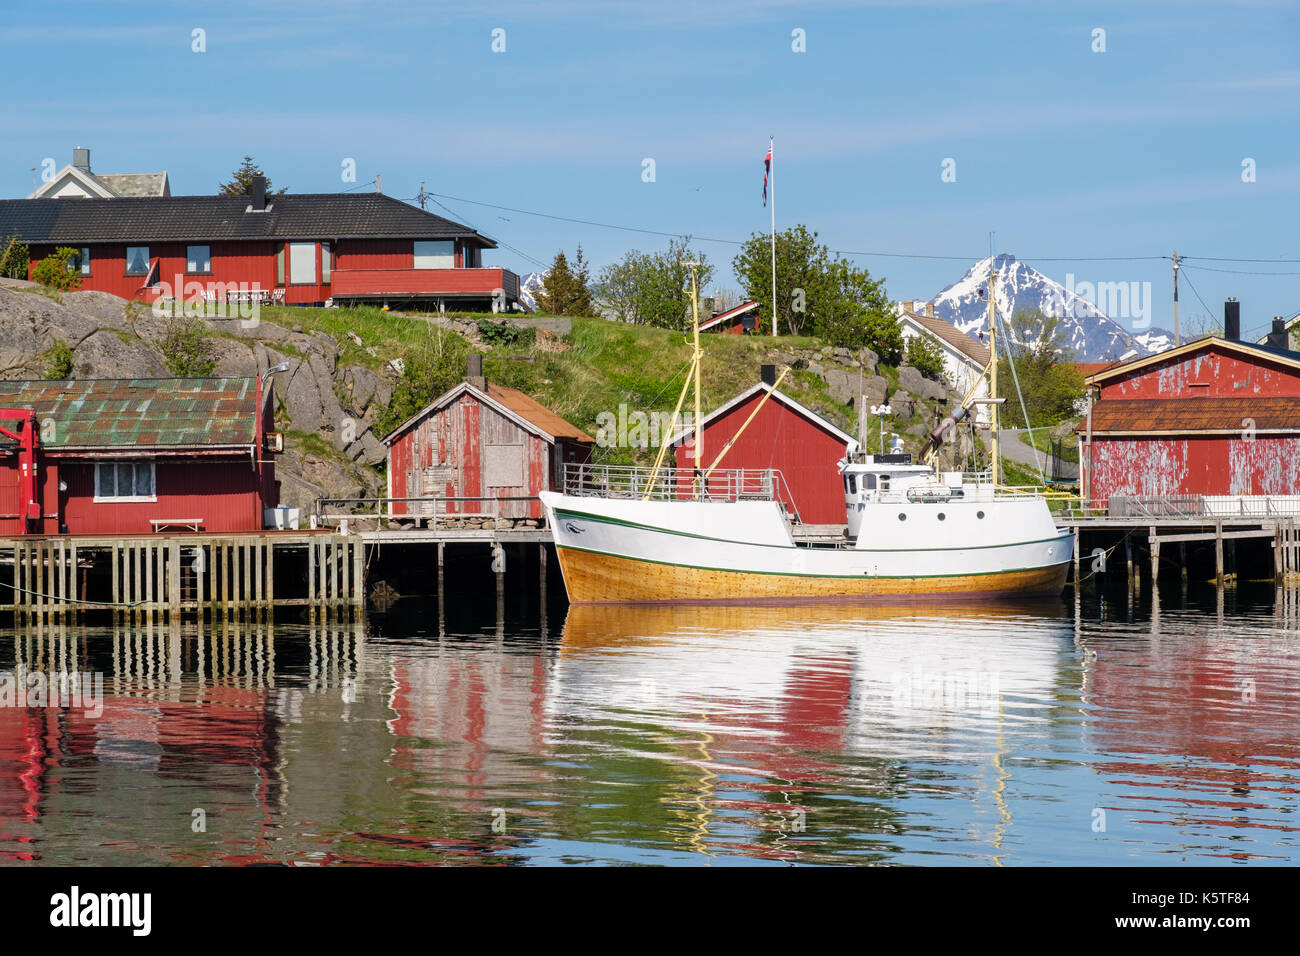 La pesca in barca ormeggiata in porto con Rorbu capanne su palafitte in villaggio norvegese. Ballstad, Vestvågøya, Isole Lofoten, Nordland, Norvegia Foto Stock